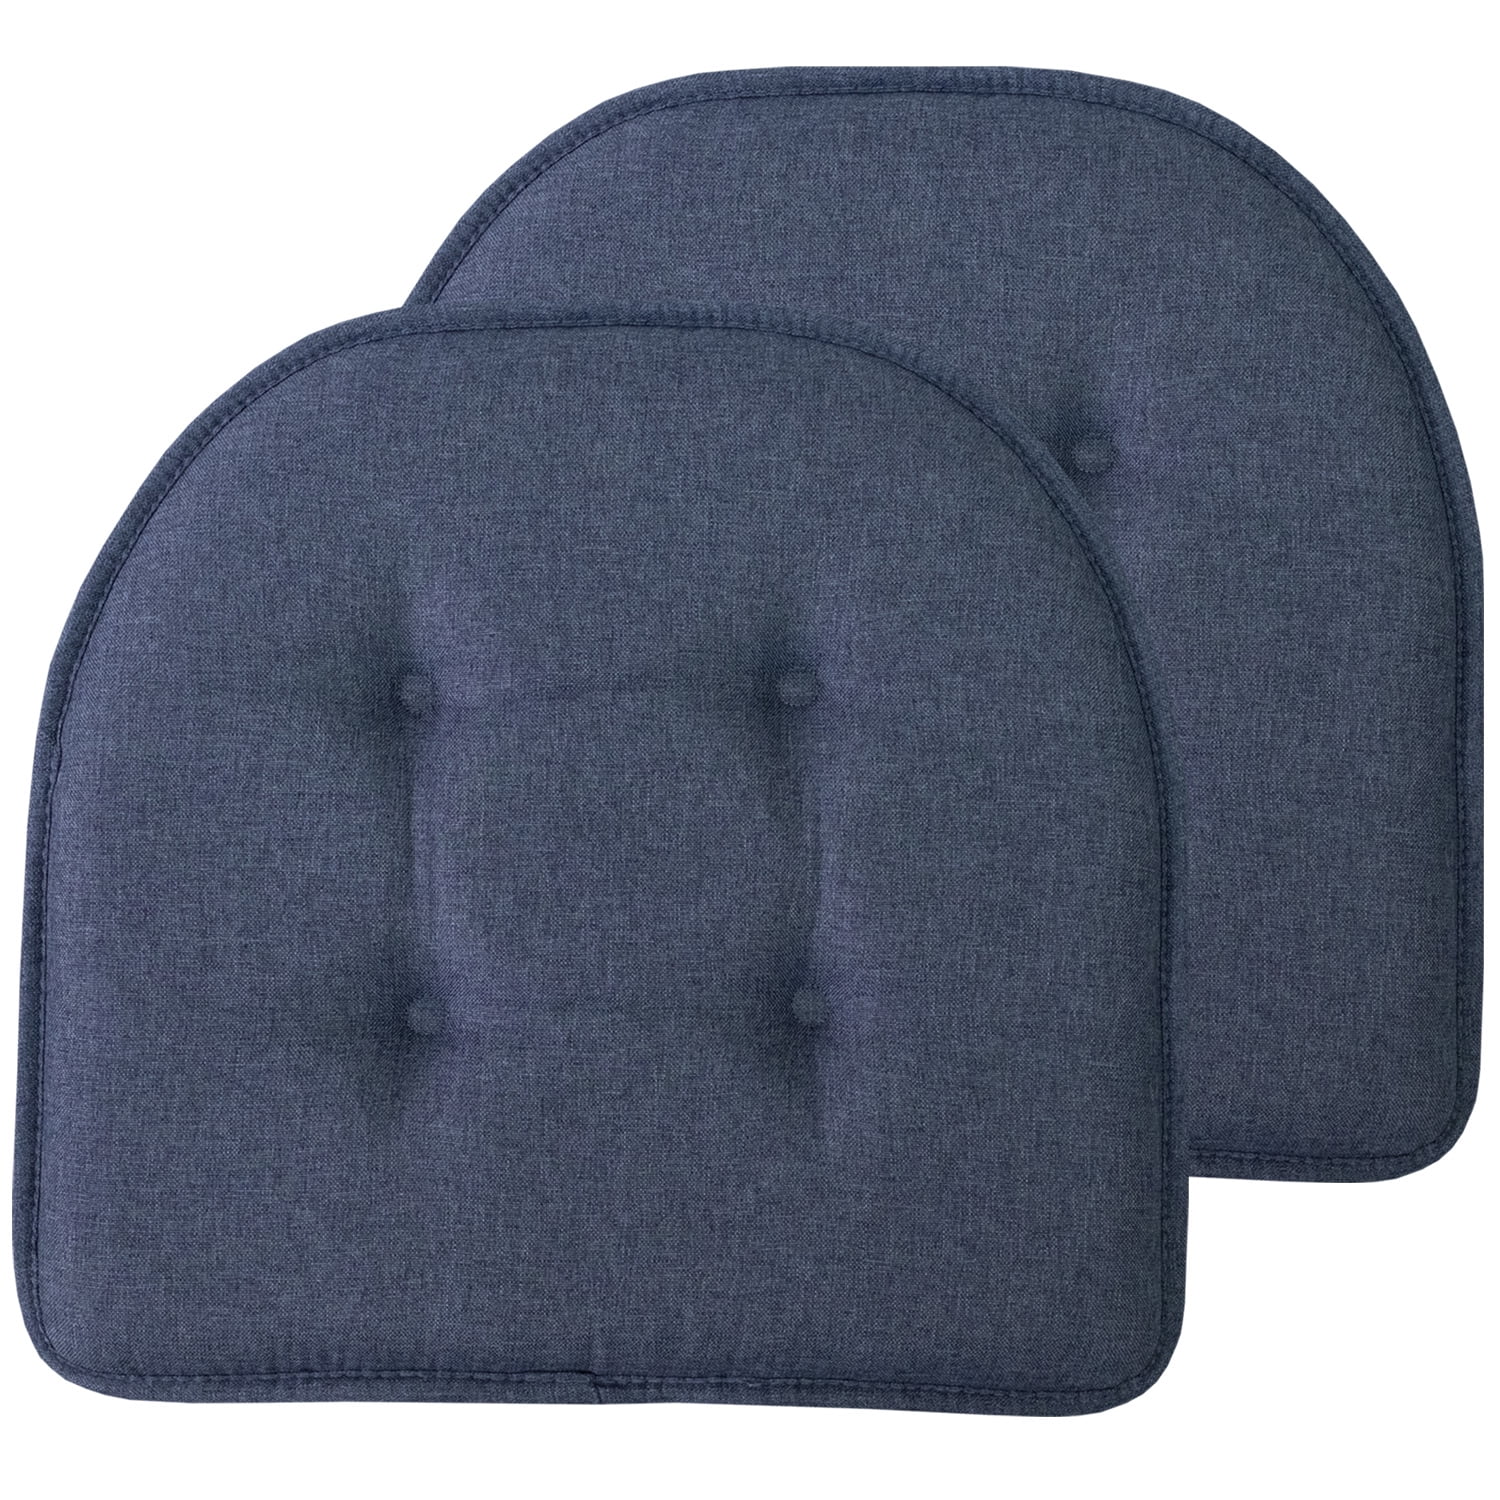 2 Gel/Foam Gel-U-Seat Cushion 16 x 16